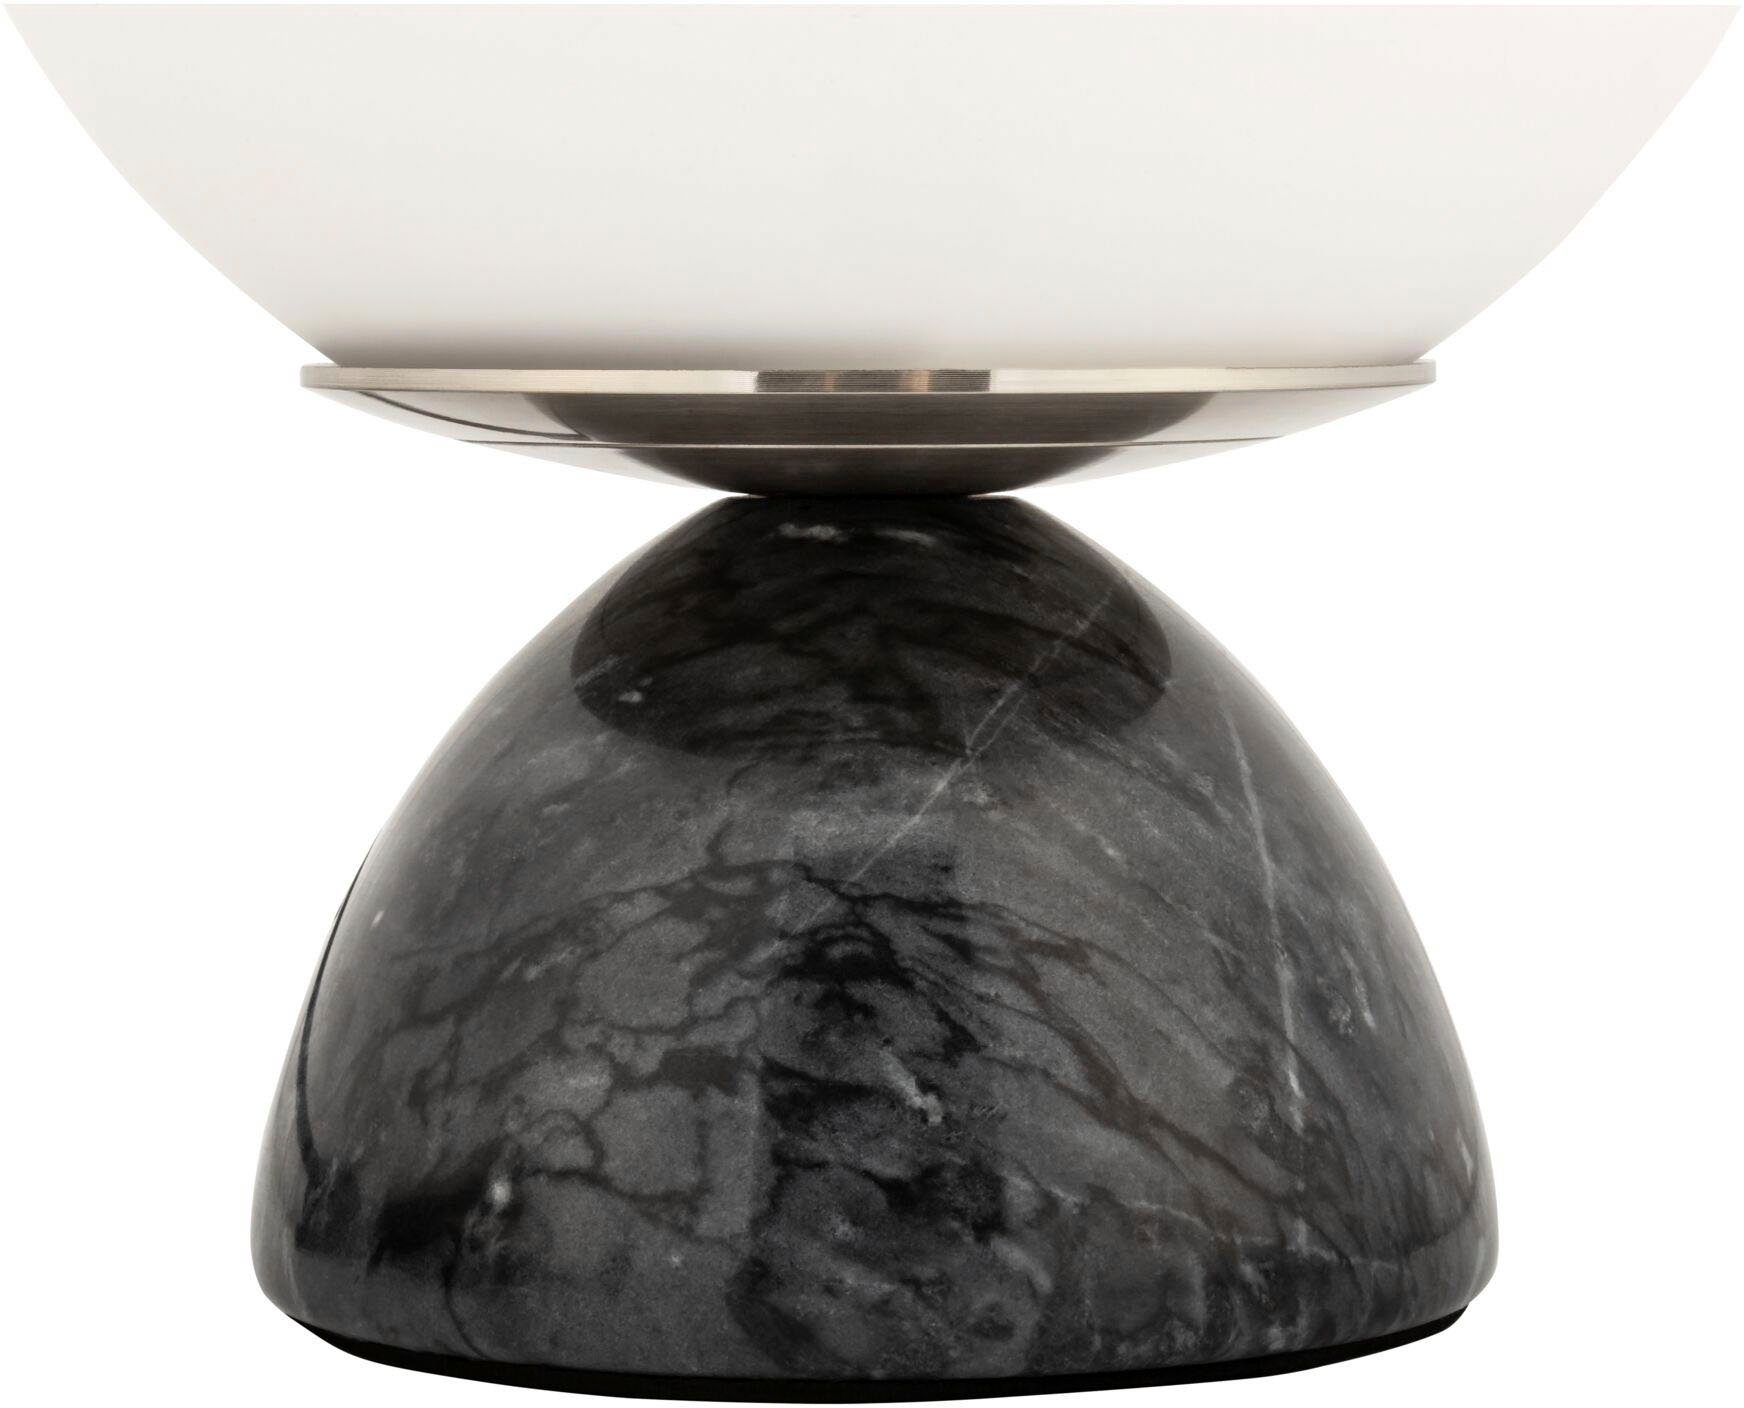 Pauleen Tischleuchte Shining Schwarz/Weiß ohne Marmor/Glas, Ein-/Ausschalter, Pearl max20W 230V E14 Leuchtmittel